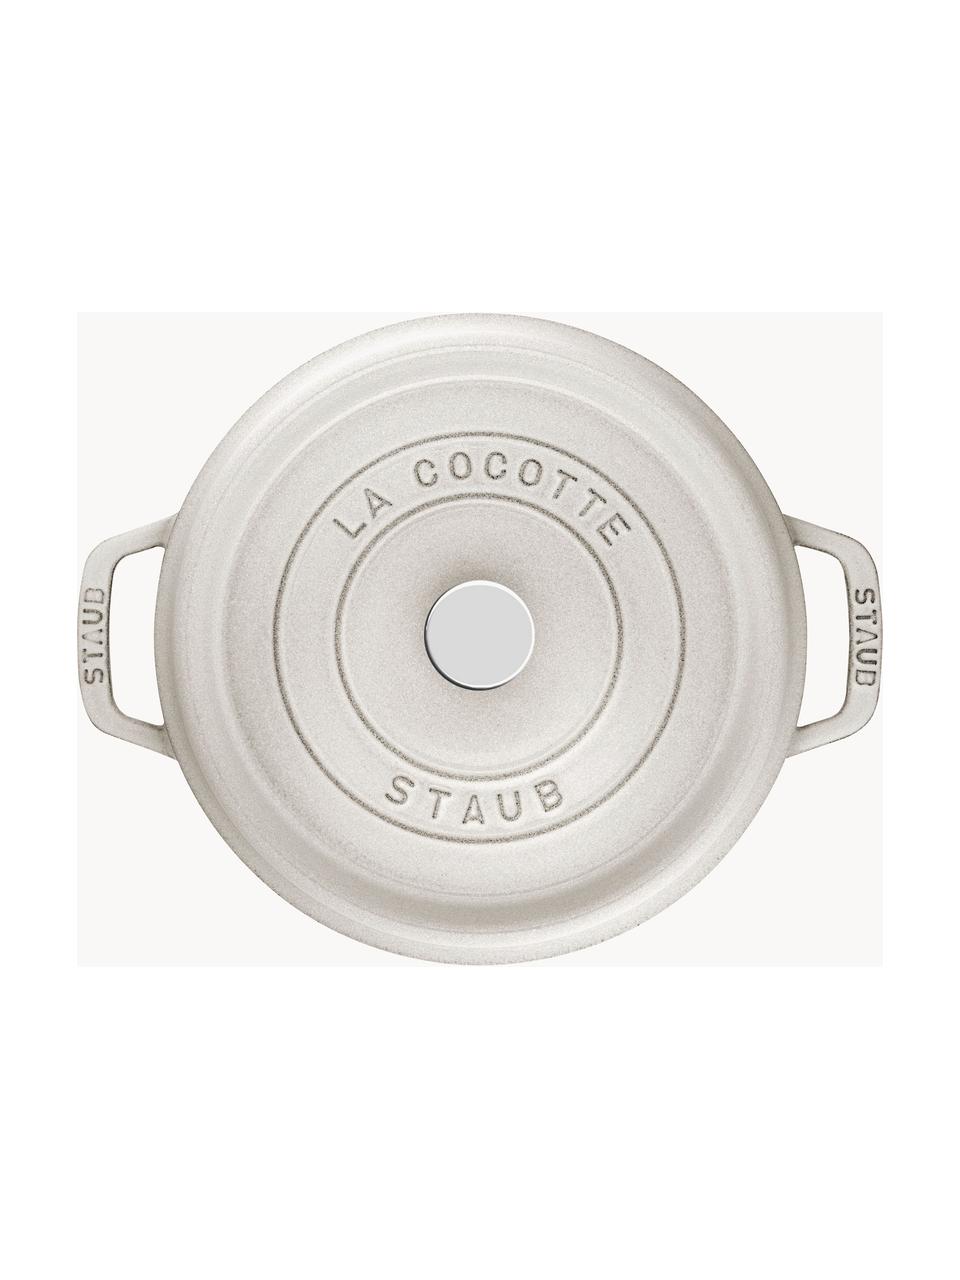 Cocotte ronde en fonte La Cocotte, Fonte, émaillée, Gris clair, haute brillance, Ø 28 x haut. 18 cm